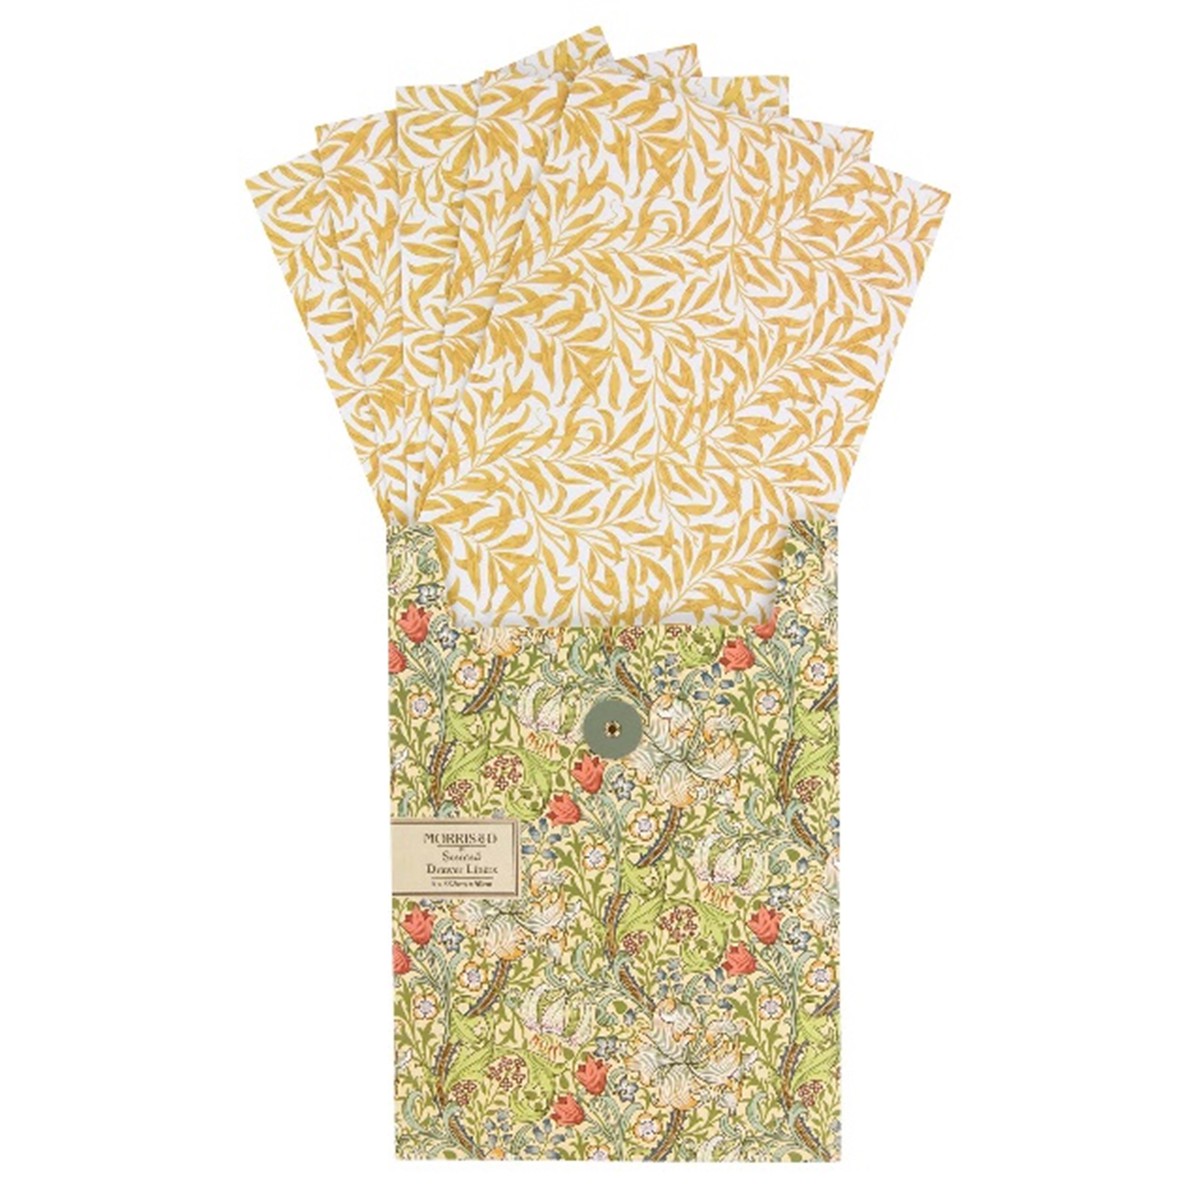  MORRIS & CO Papiers parfumés Golden Lily x5  33.5x50cm